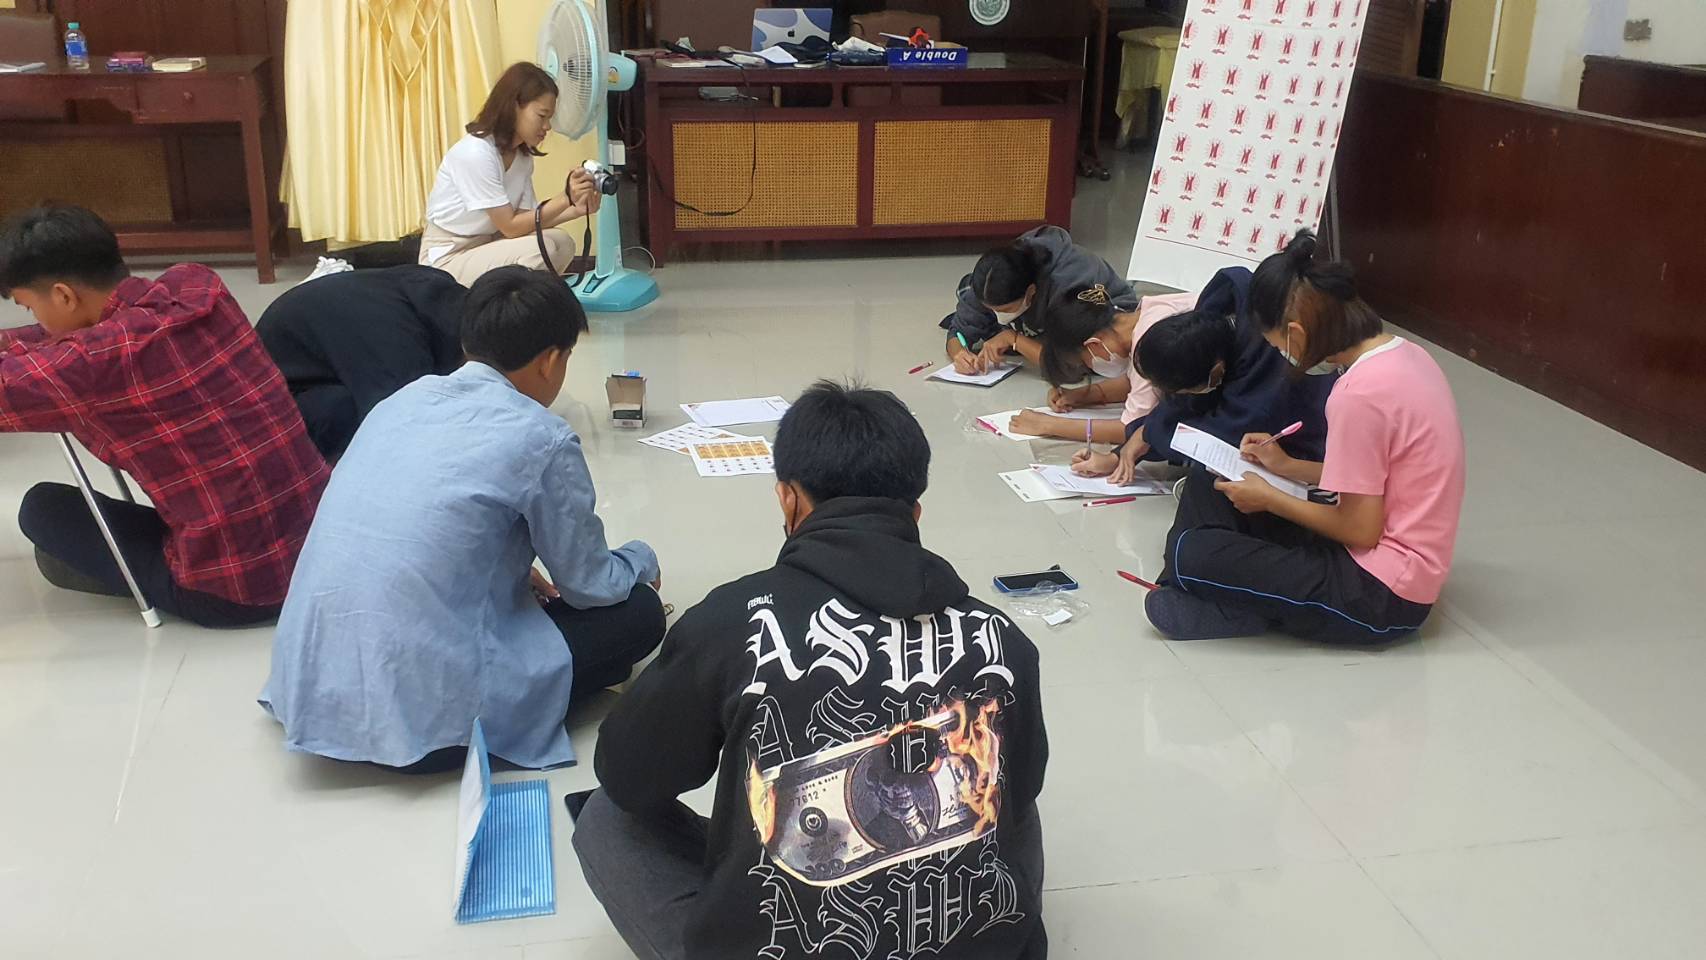 กลุ่ม Shan Youth Power ร่วมกับหอสมุดแห่งชาติรัชมังคลาภิเษก เชียงใหม่ จัดอบรมเชิงปฏิบัติการให้กับเยาวชนลูกหลานแรงงานและเด็กไร้สัญชาติ จำนวน ๗๐ คน